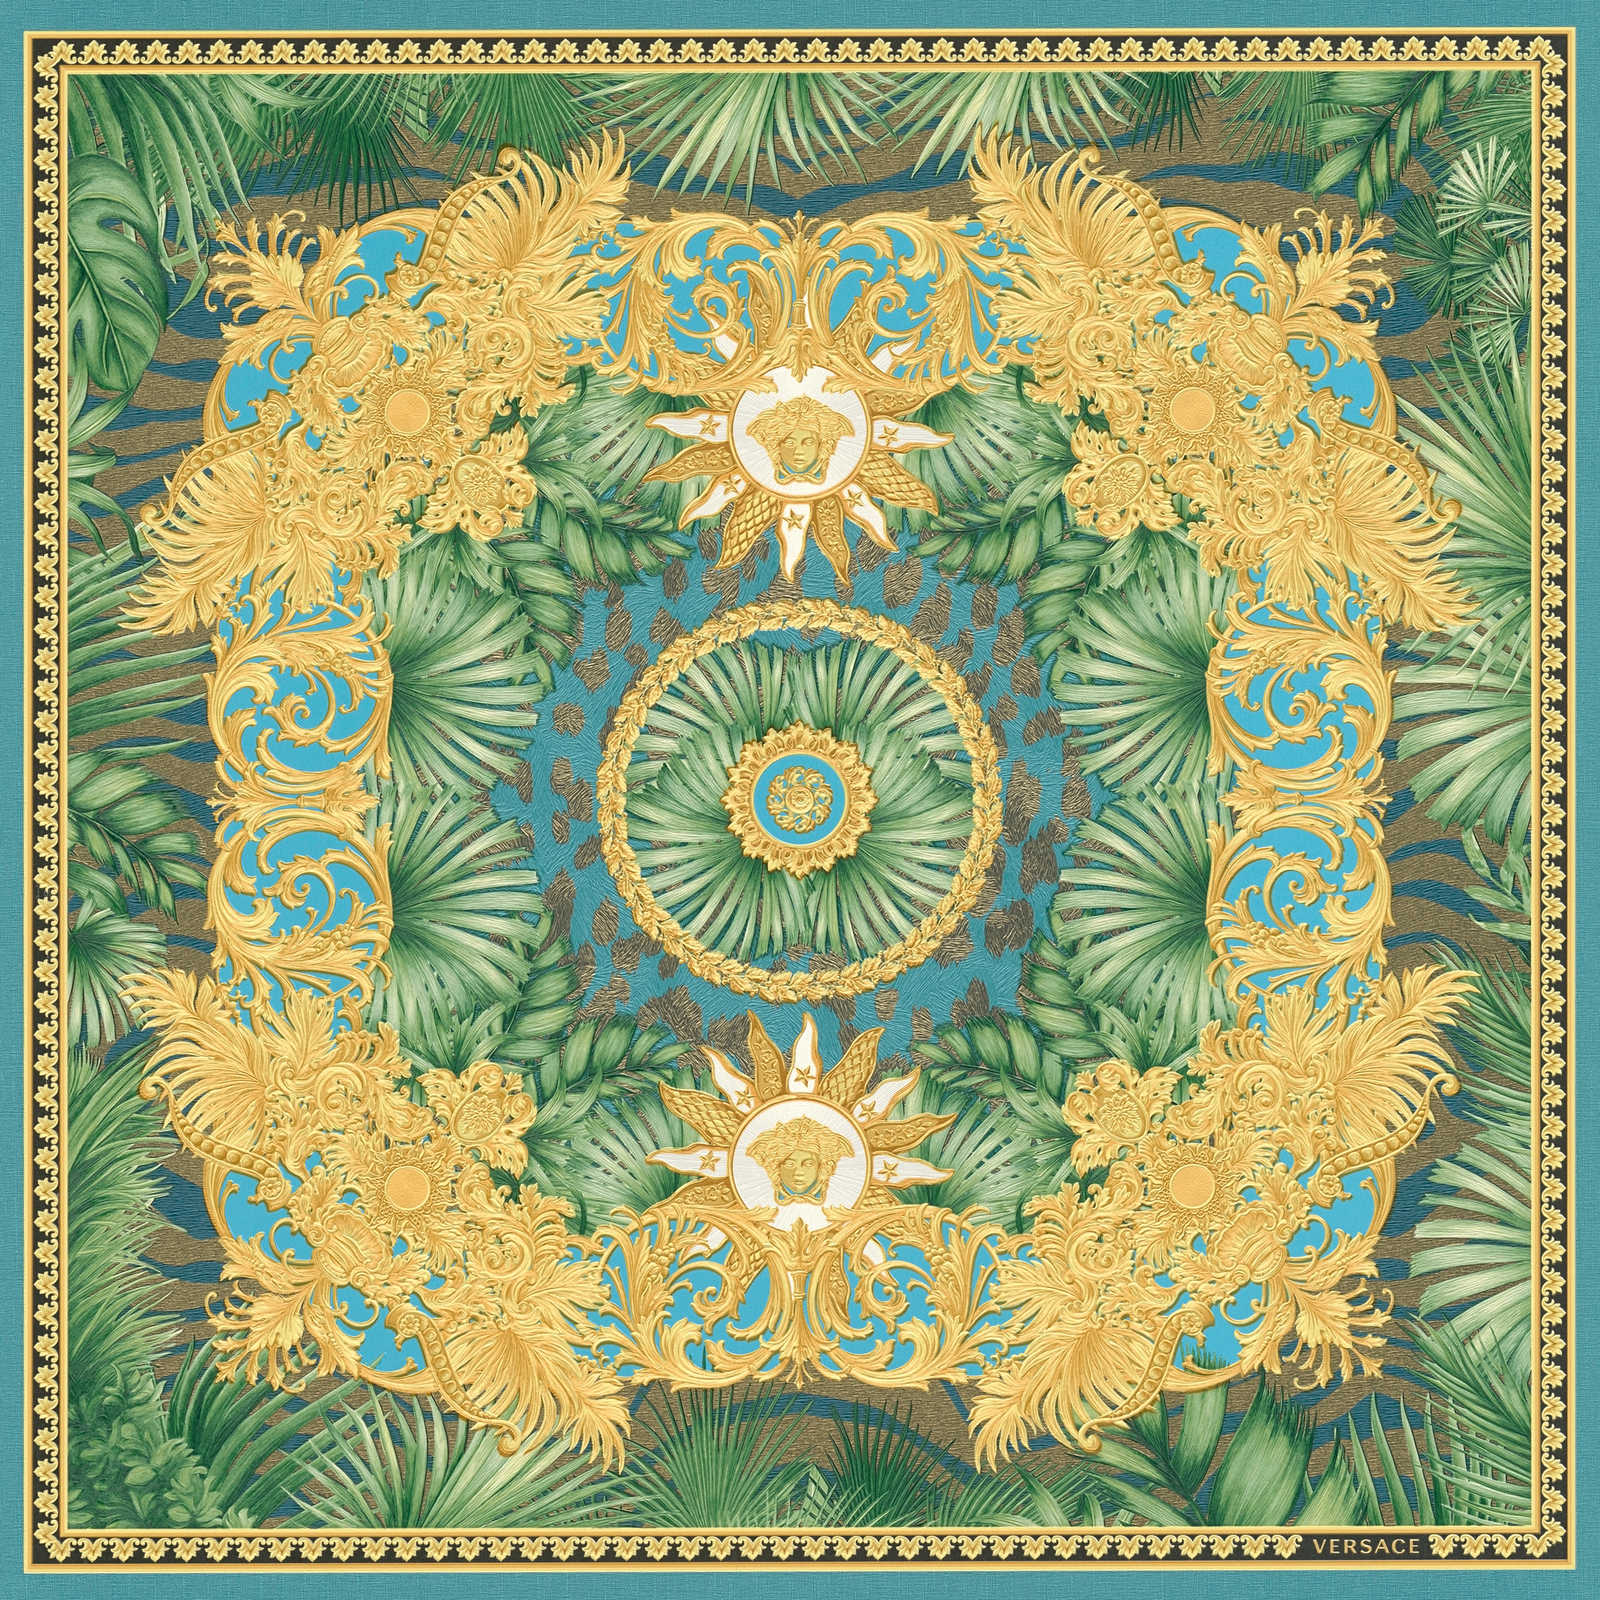             VERSACE Tapete Dschungel und Ornament Motiv – Grün, Metallic
        